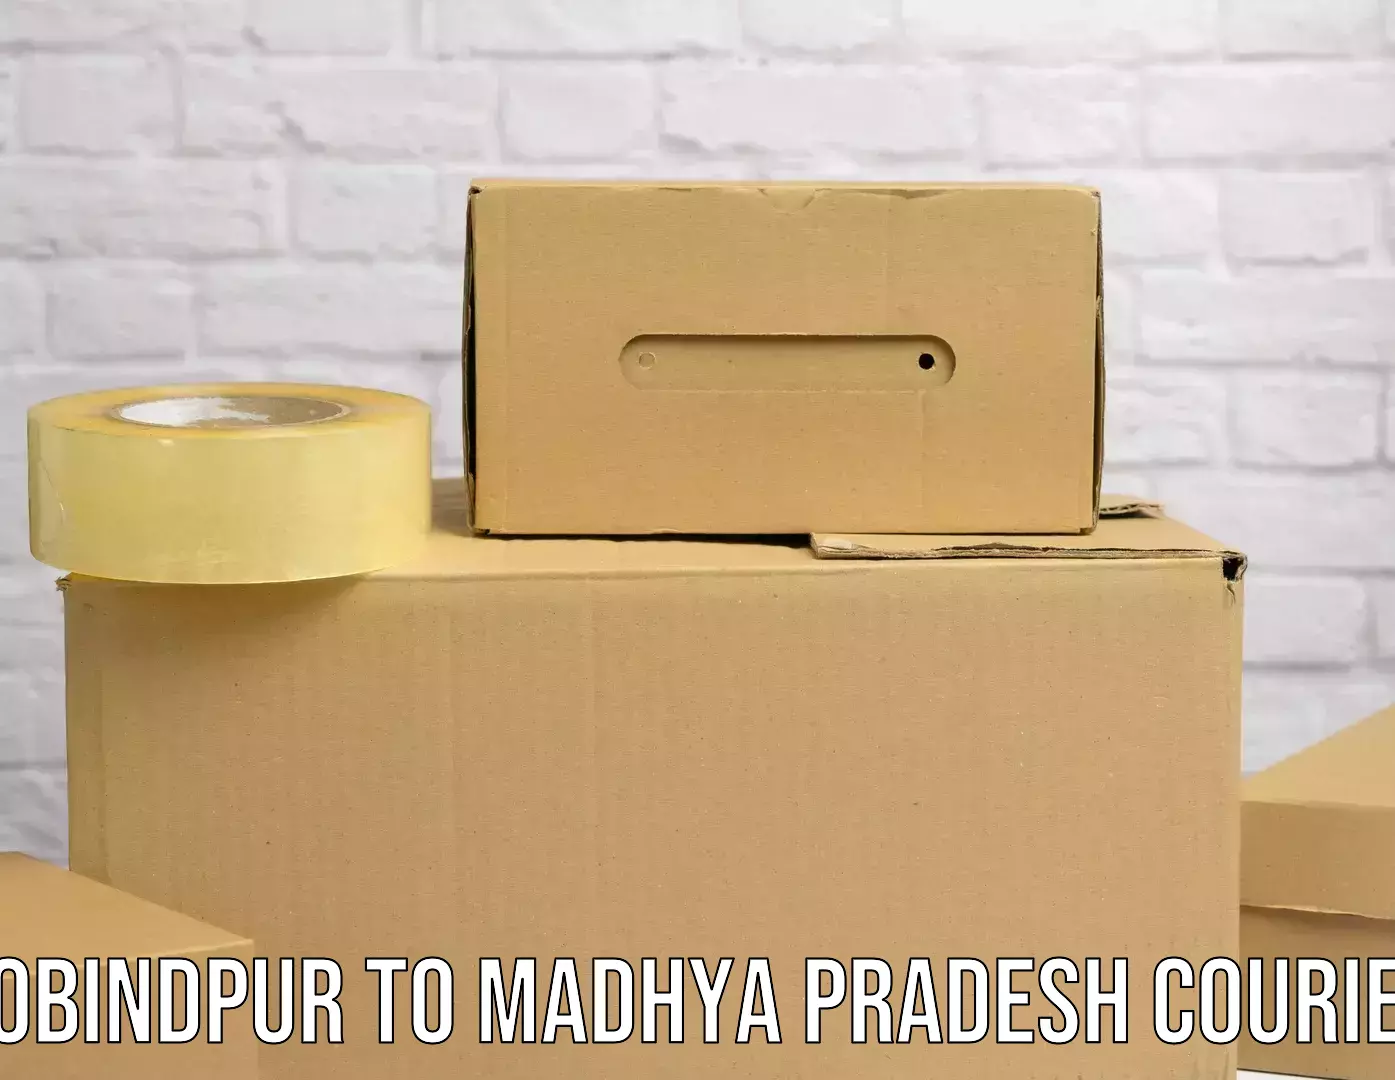 On-demand shipping options Gobindpur to Lashkar